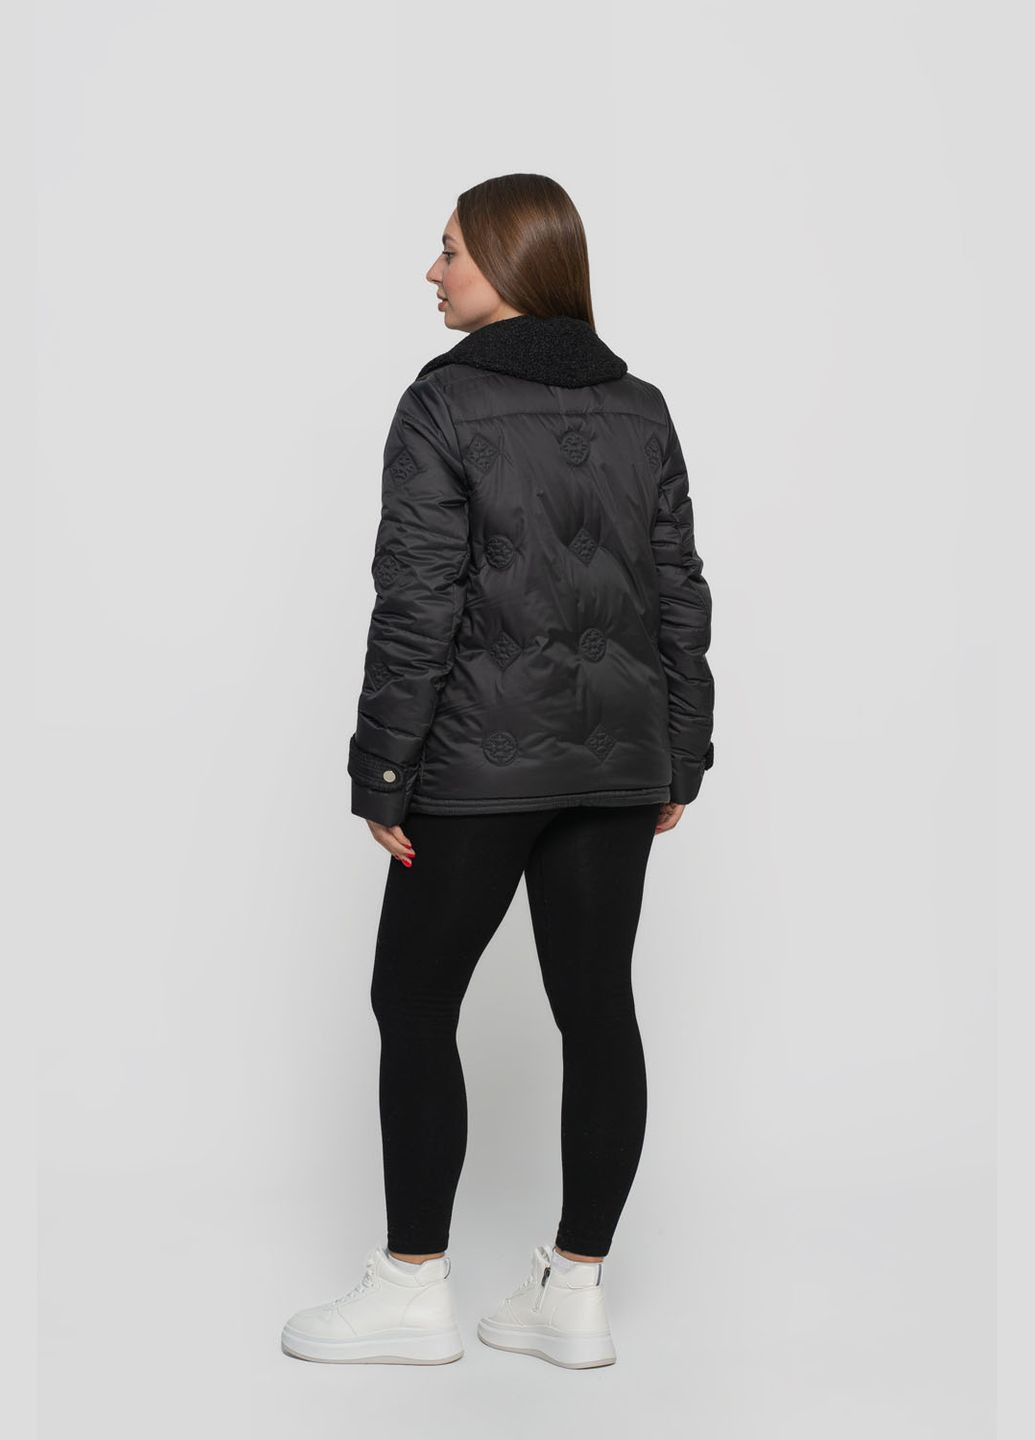 Черная демисезонная куртка женская короткая viton куртка-пиджак Vicco